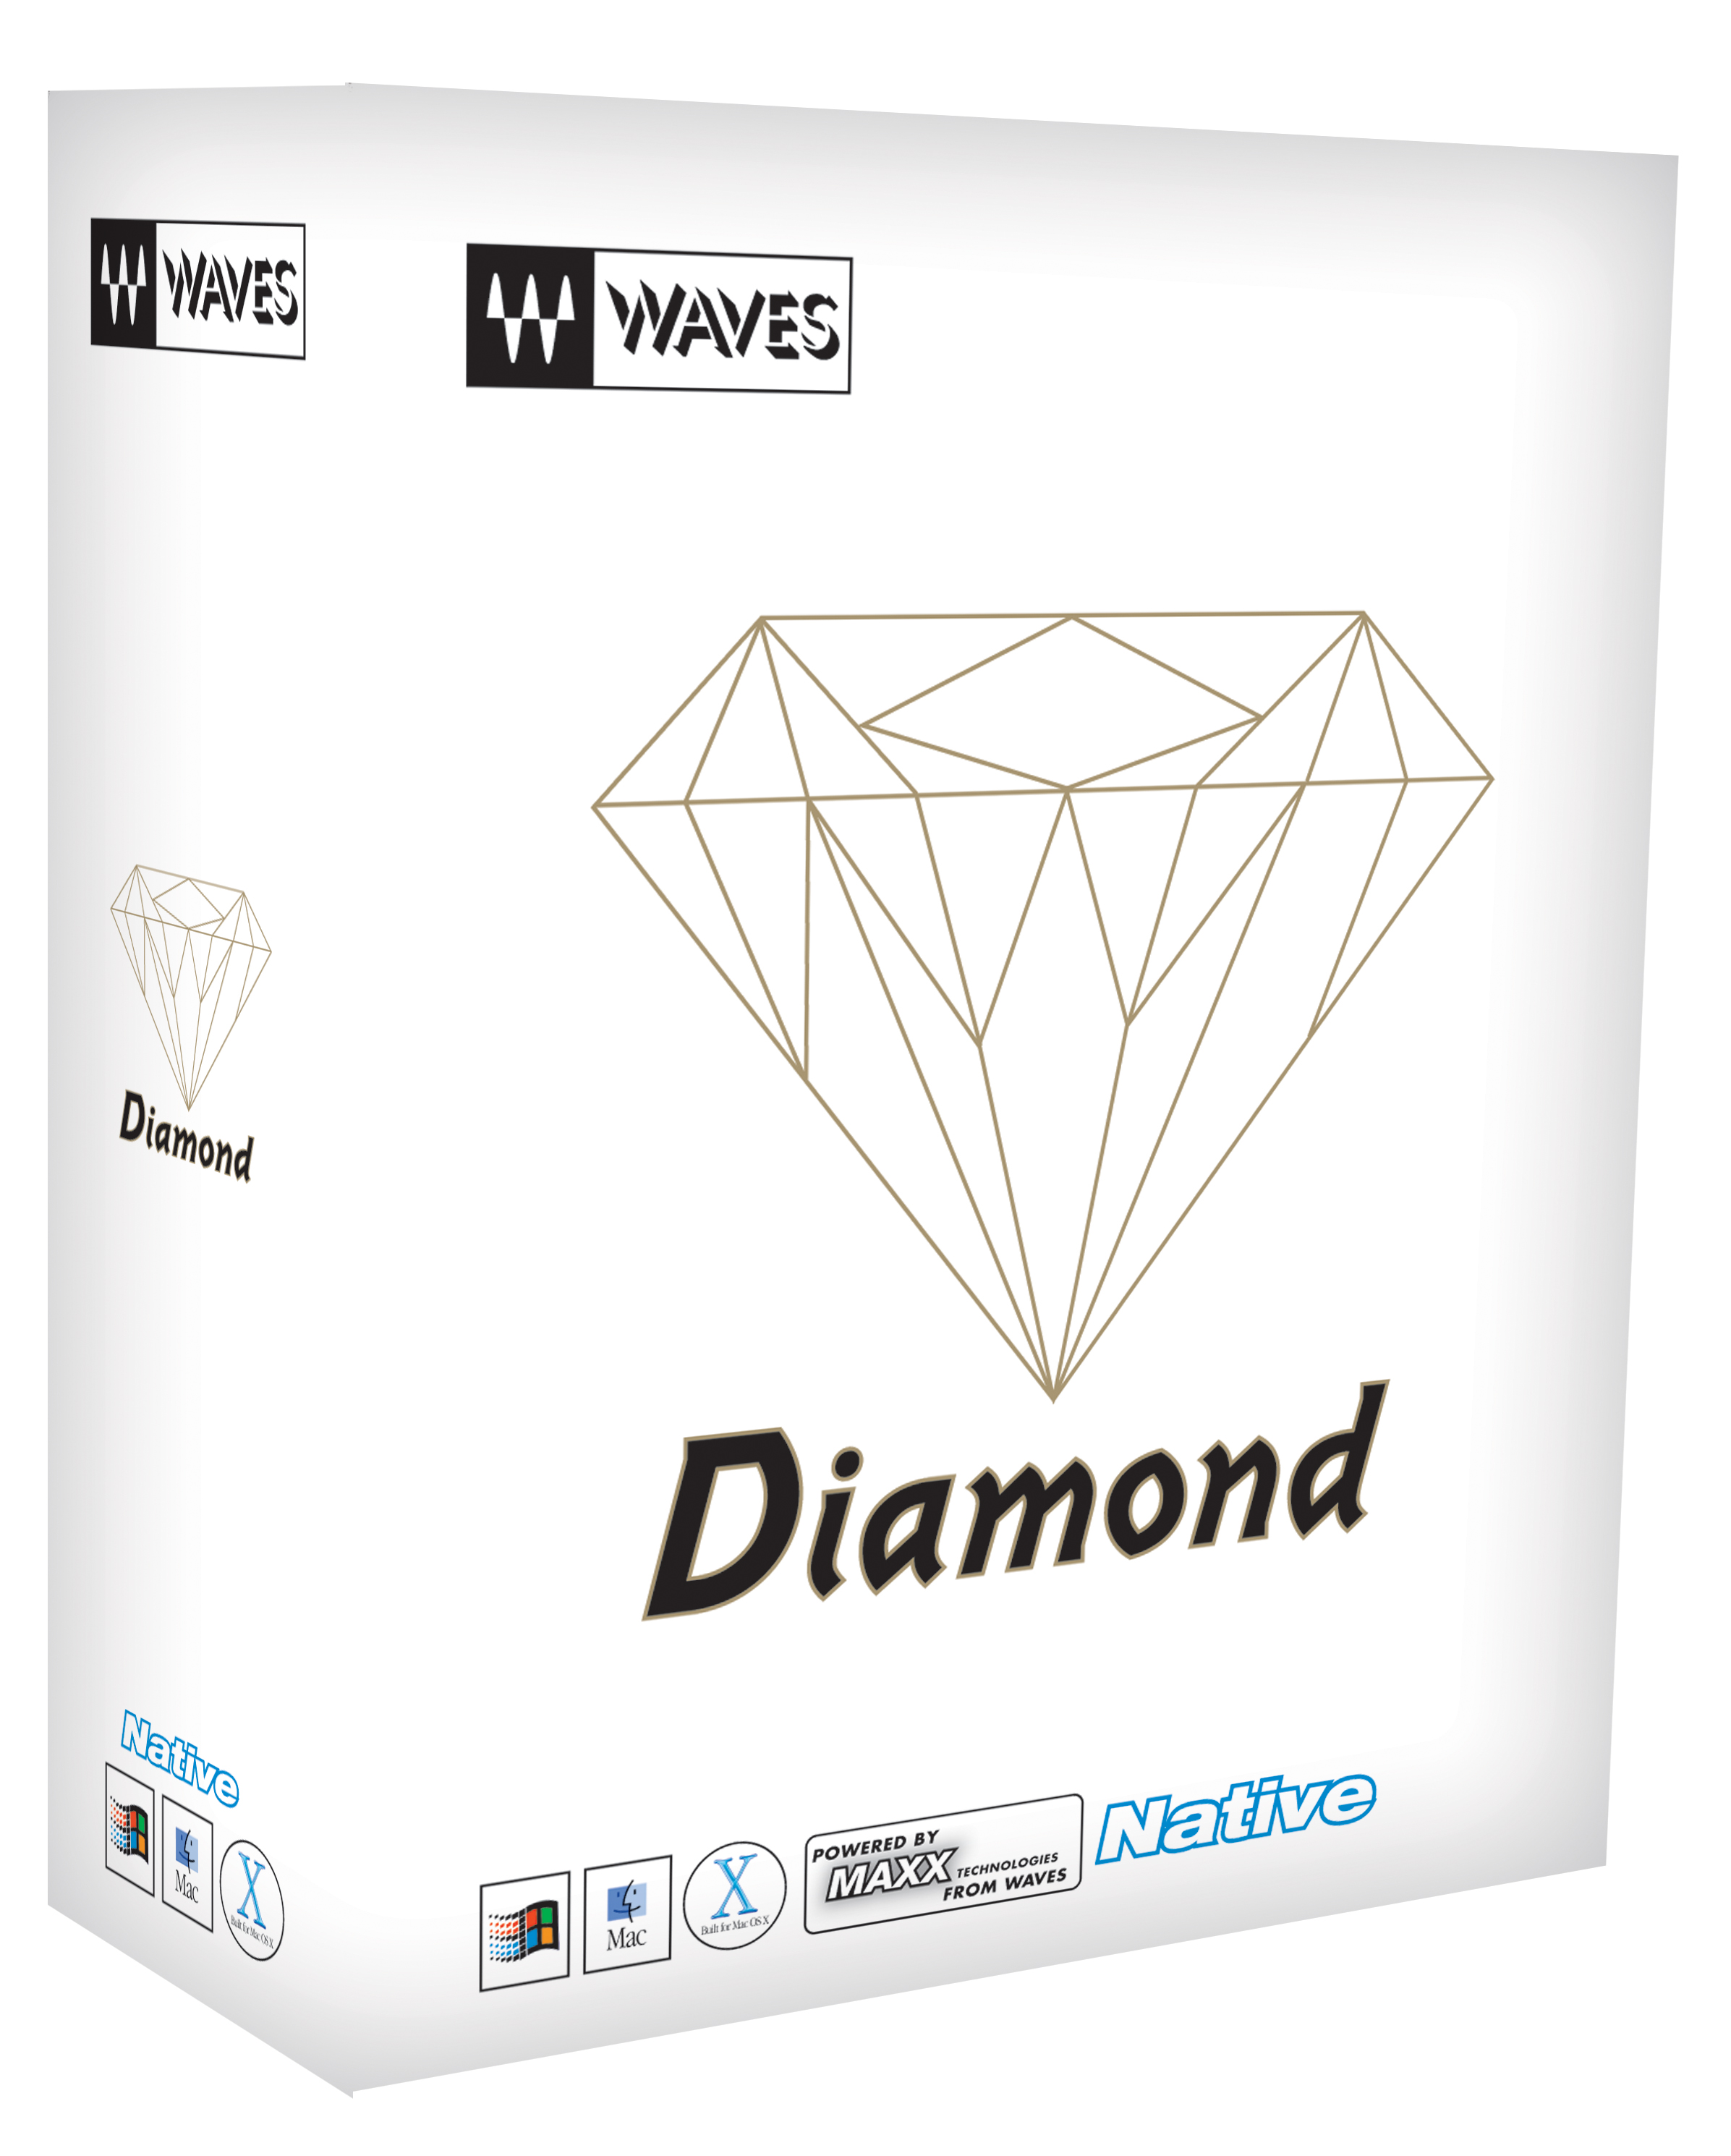 waves diamond bundle free